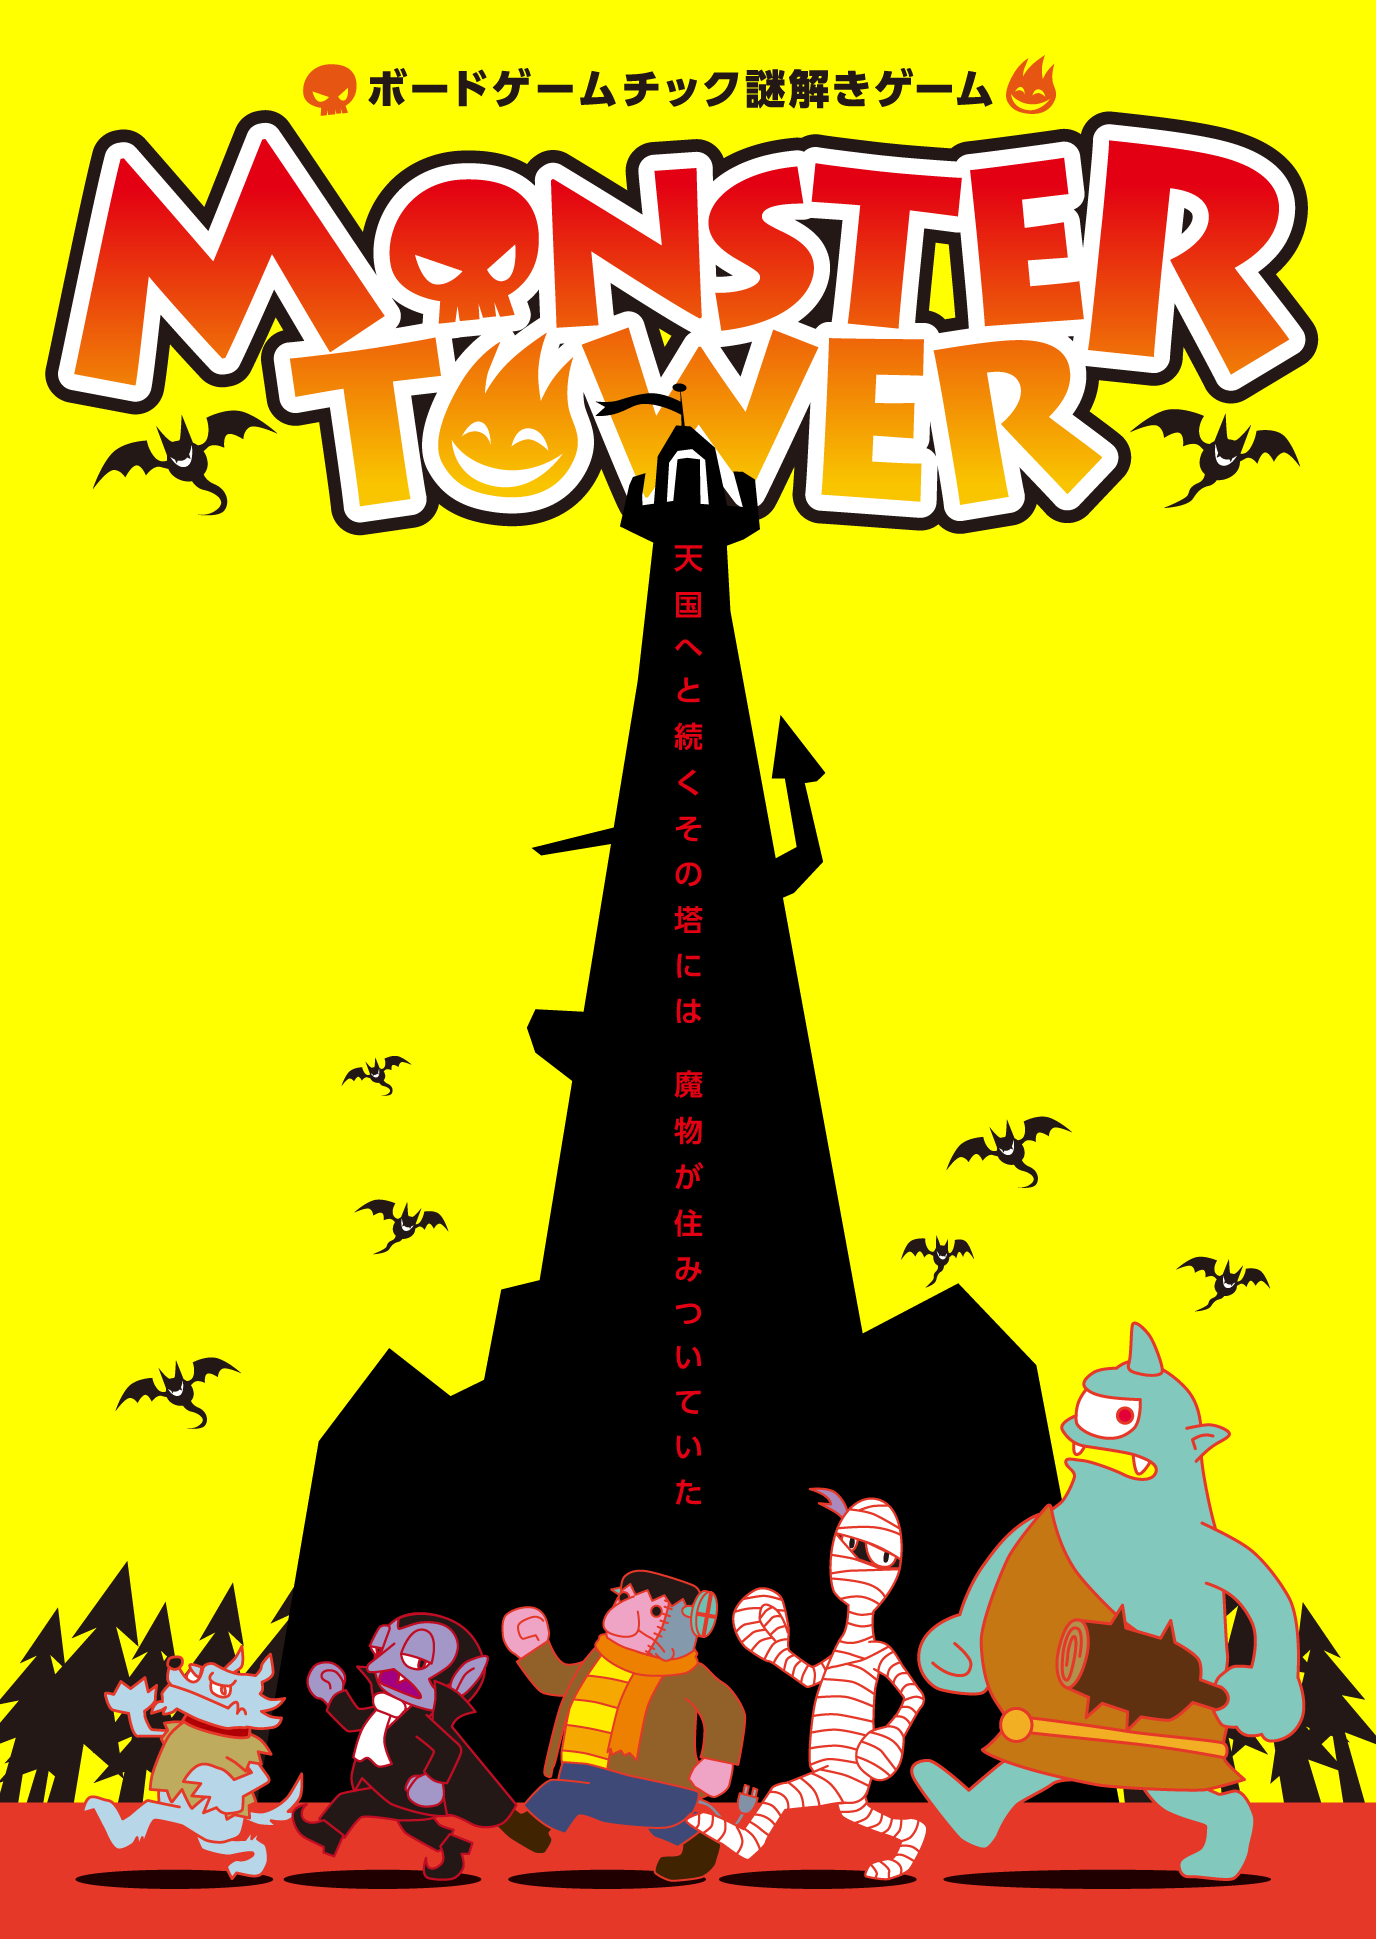 ボードゲームチック謎解きゲーム「MONSTER TOWER」【再演・通常チケット】